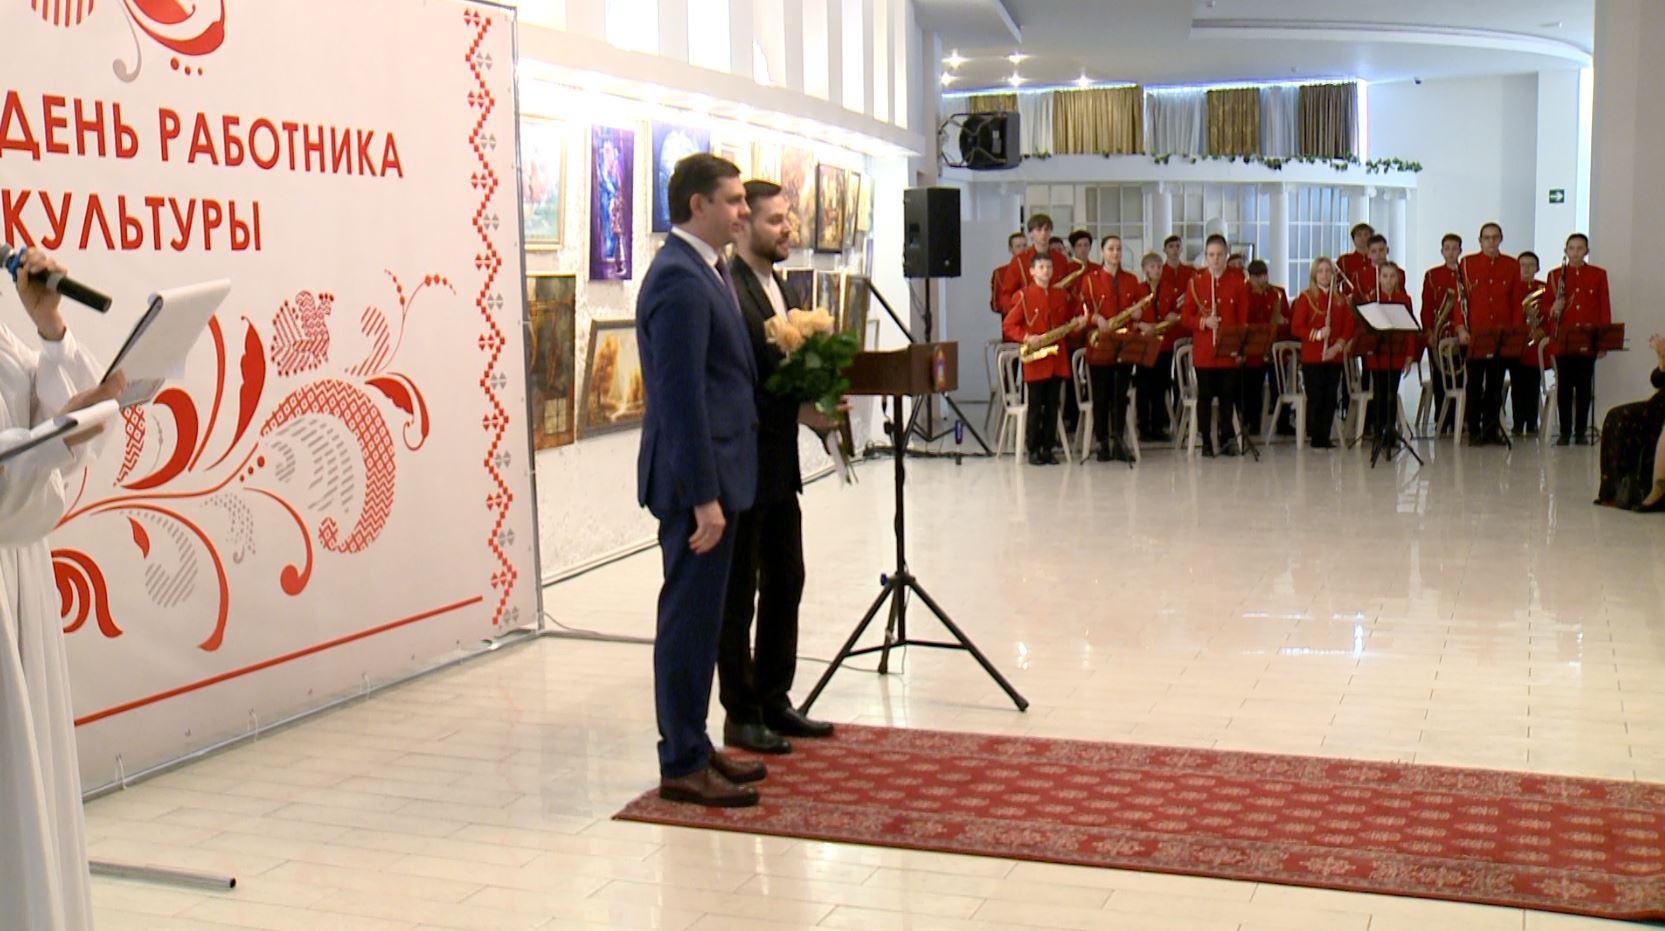 Губернатор Орловской области Андрей Клычков поздравил работников культуры с праздником